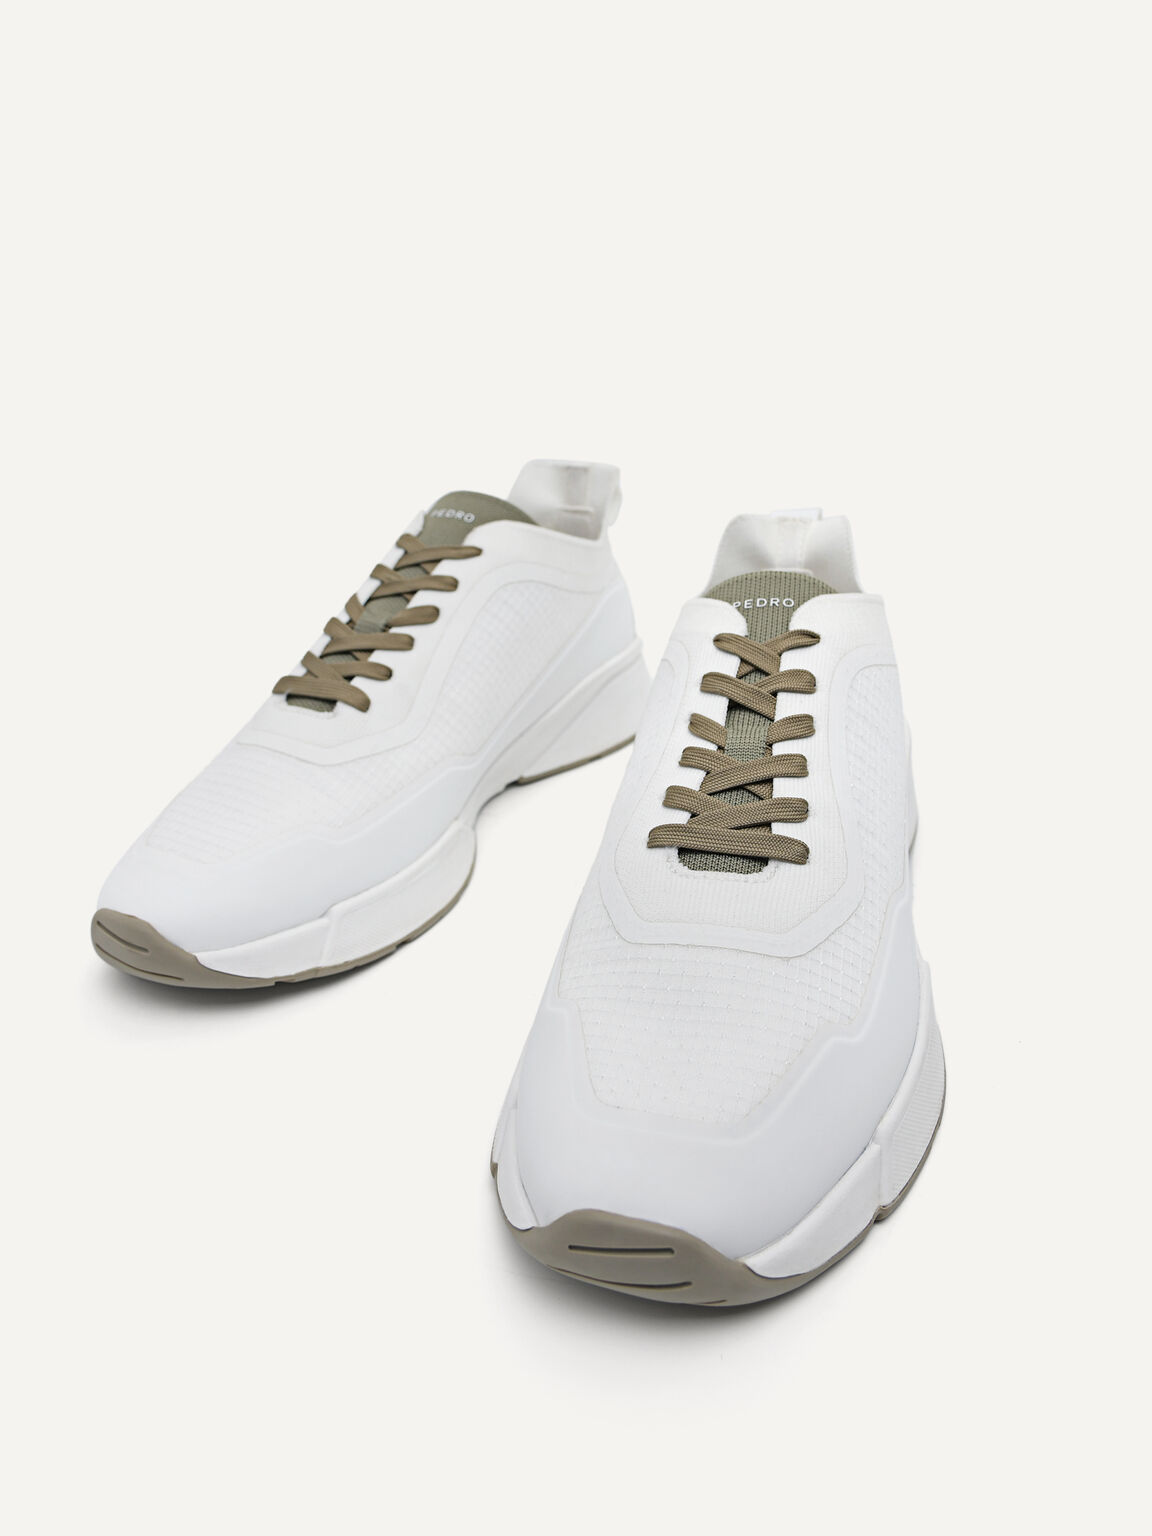 針織厚底運動鞋, 白色